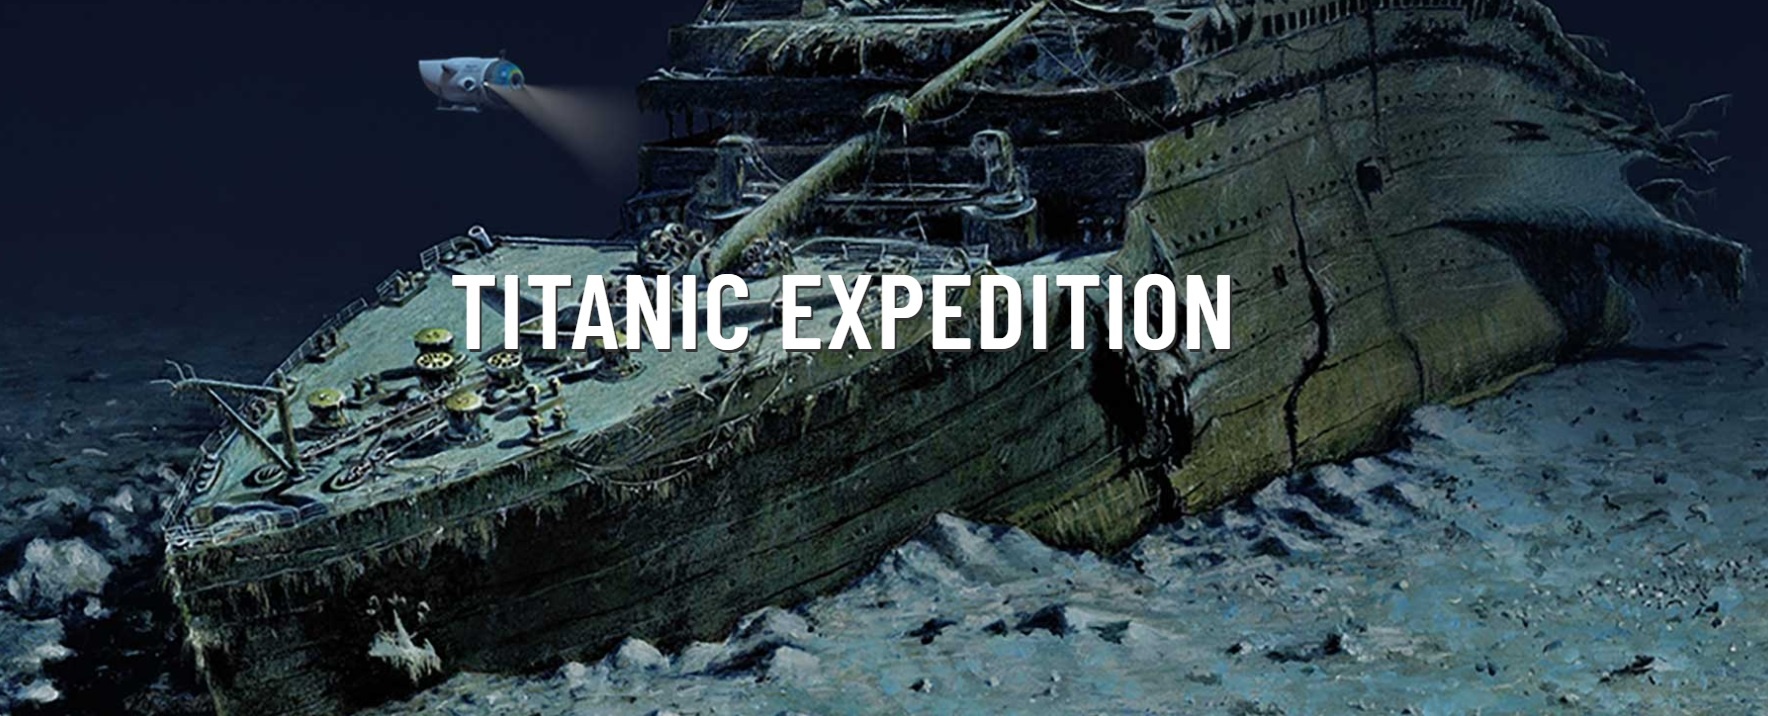 В Атлантическом океане пропал батискаф, который спускал туристов к обломкам «Титаника»